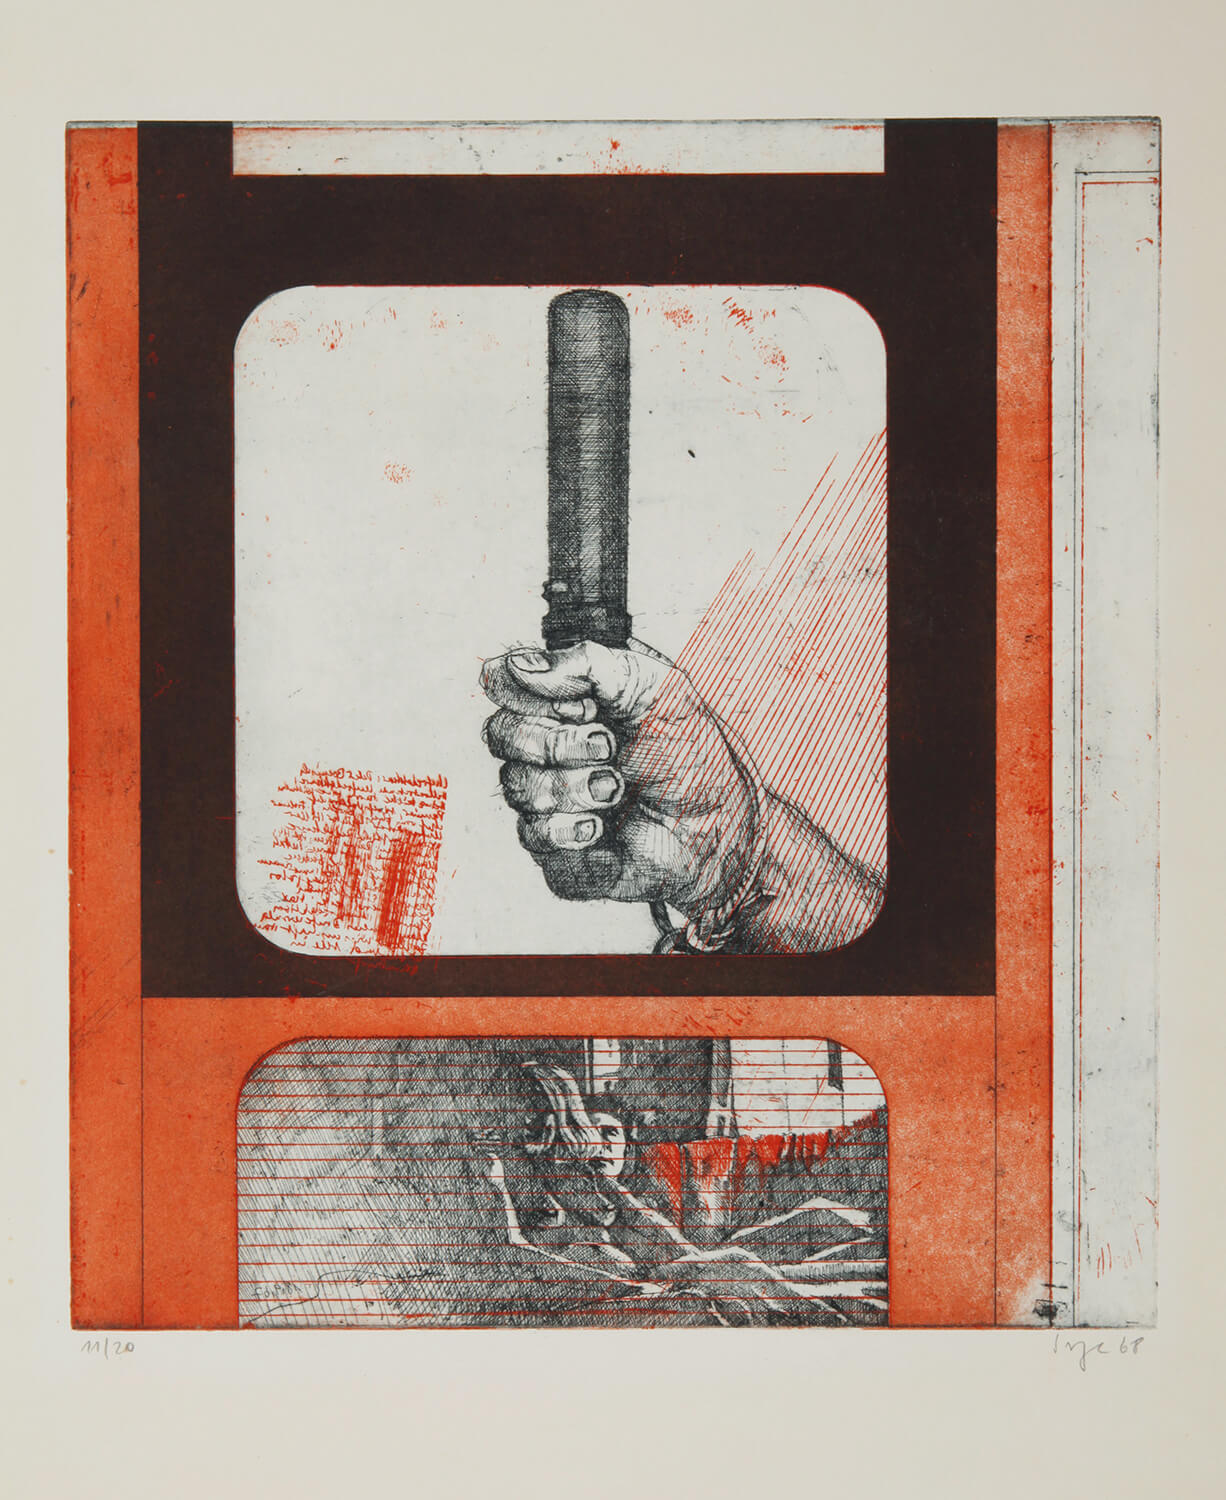 Peter Sorge, Heißer Sommer III, 1967, Farbradierung, Auflage: 20, Bild: 45 x 40 cm, Papier: 78,8 x 53,8 cm (nur zusammen mit Heißer Sommer I + II)